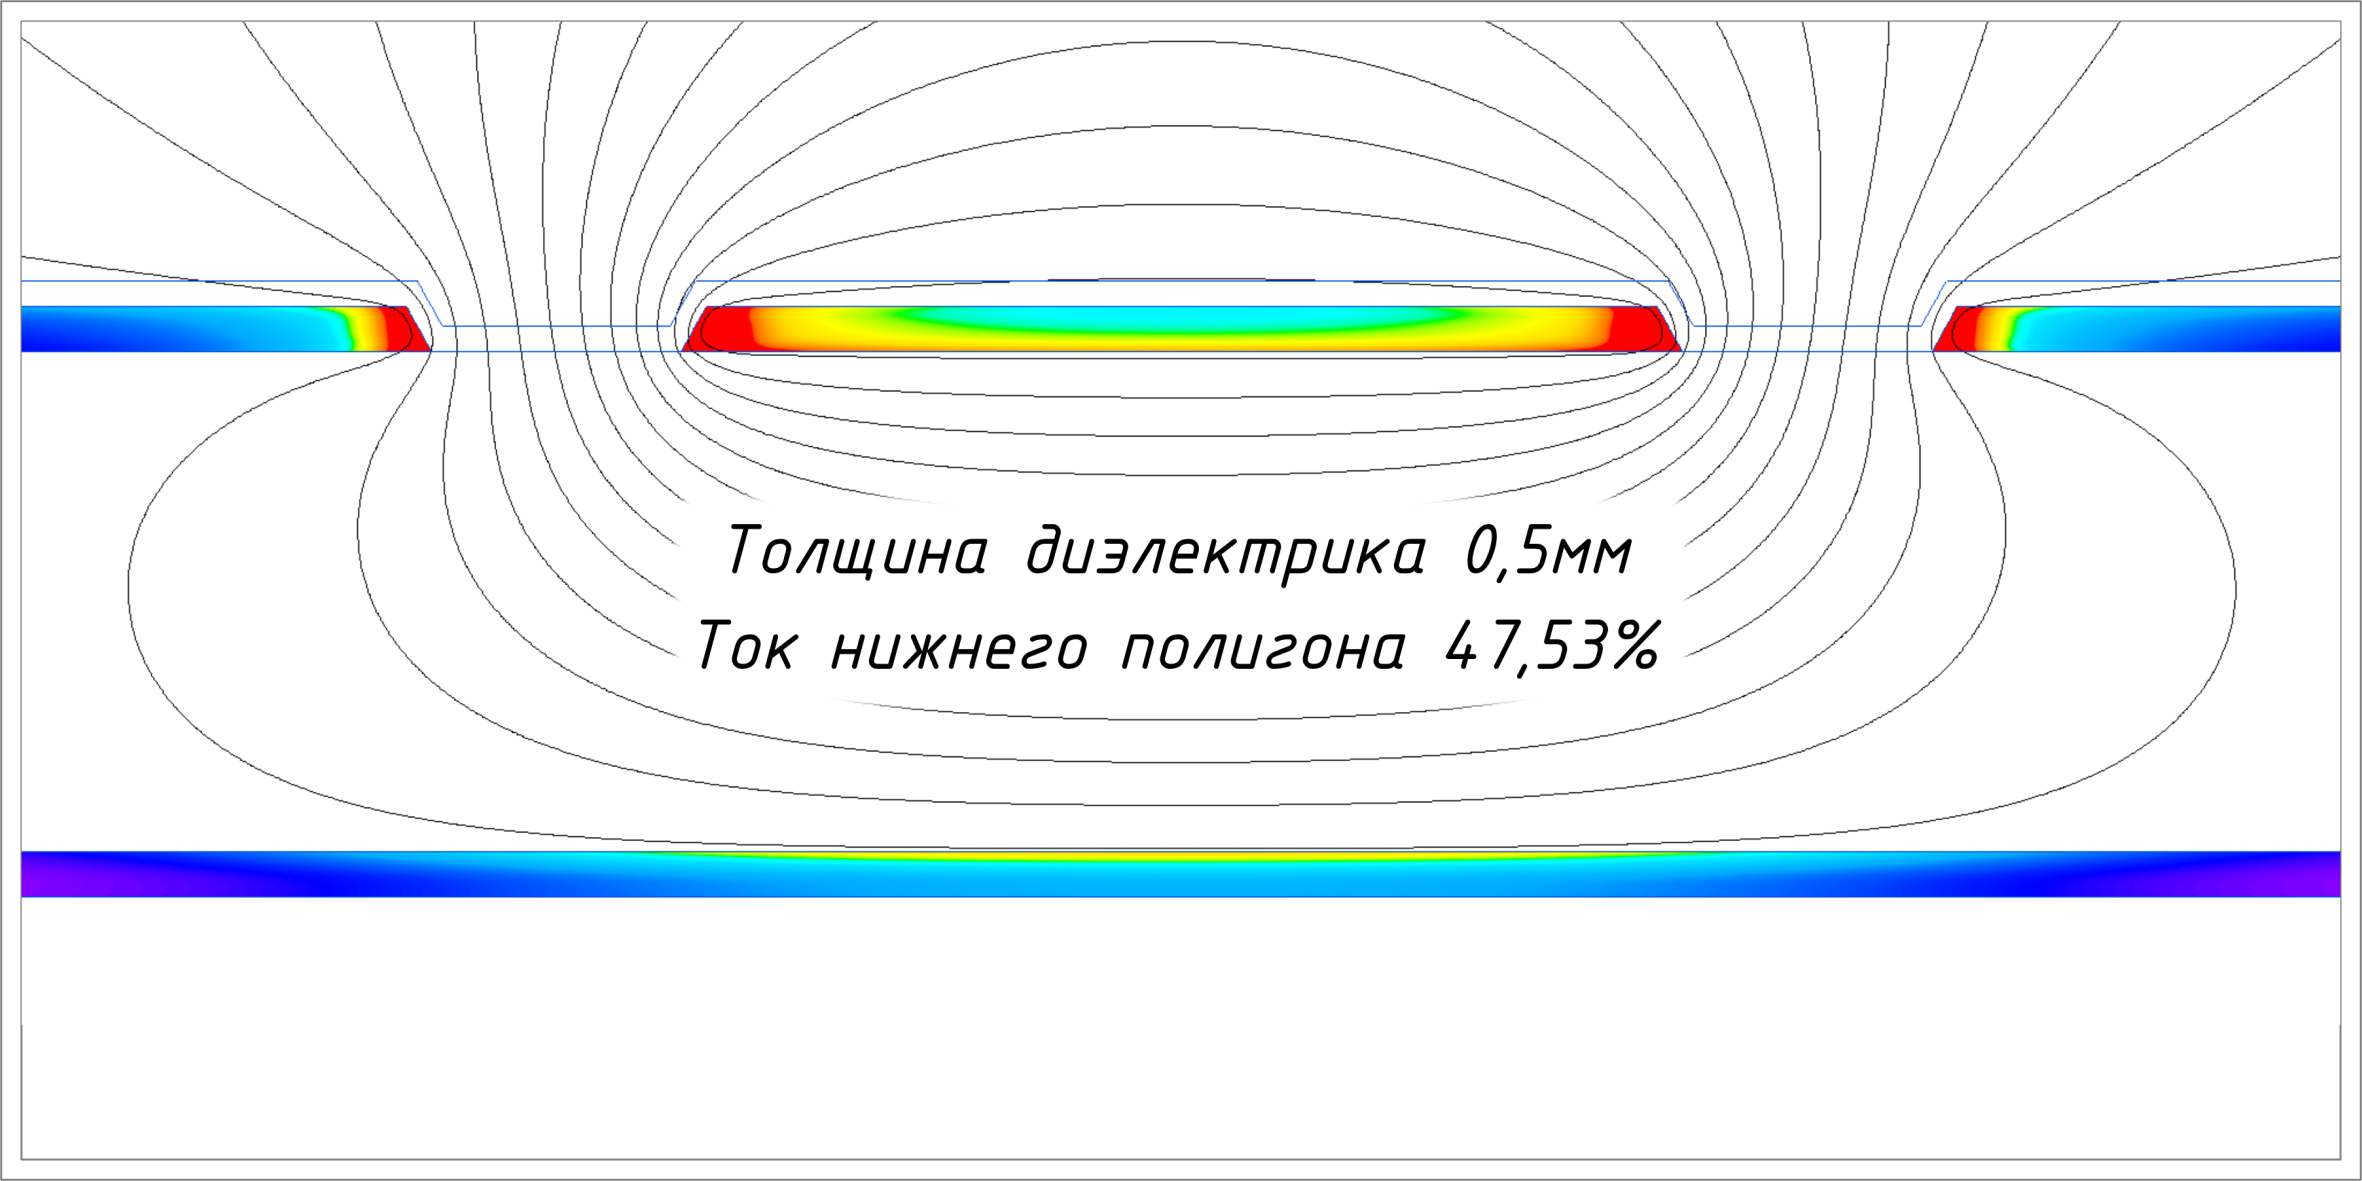 Возвратный ток течёт в равной степени как по верхним полигонам, так и по нижнему.
Результат симуляции в ELCUT компании «Тор»